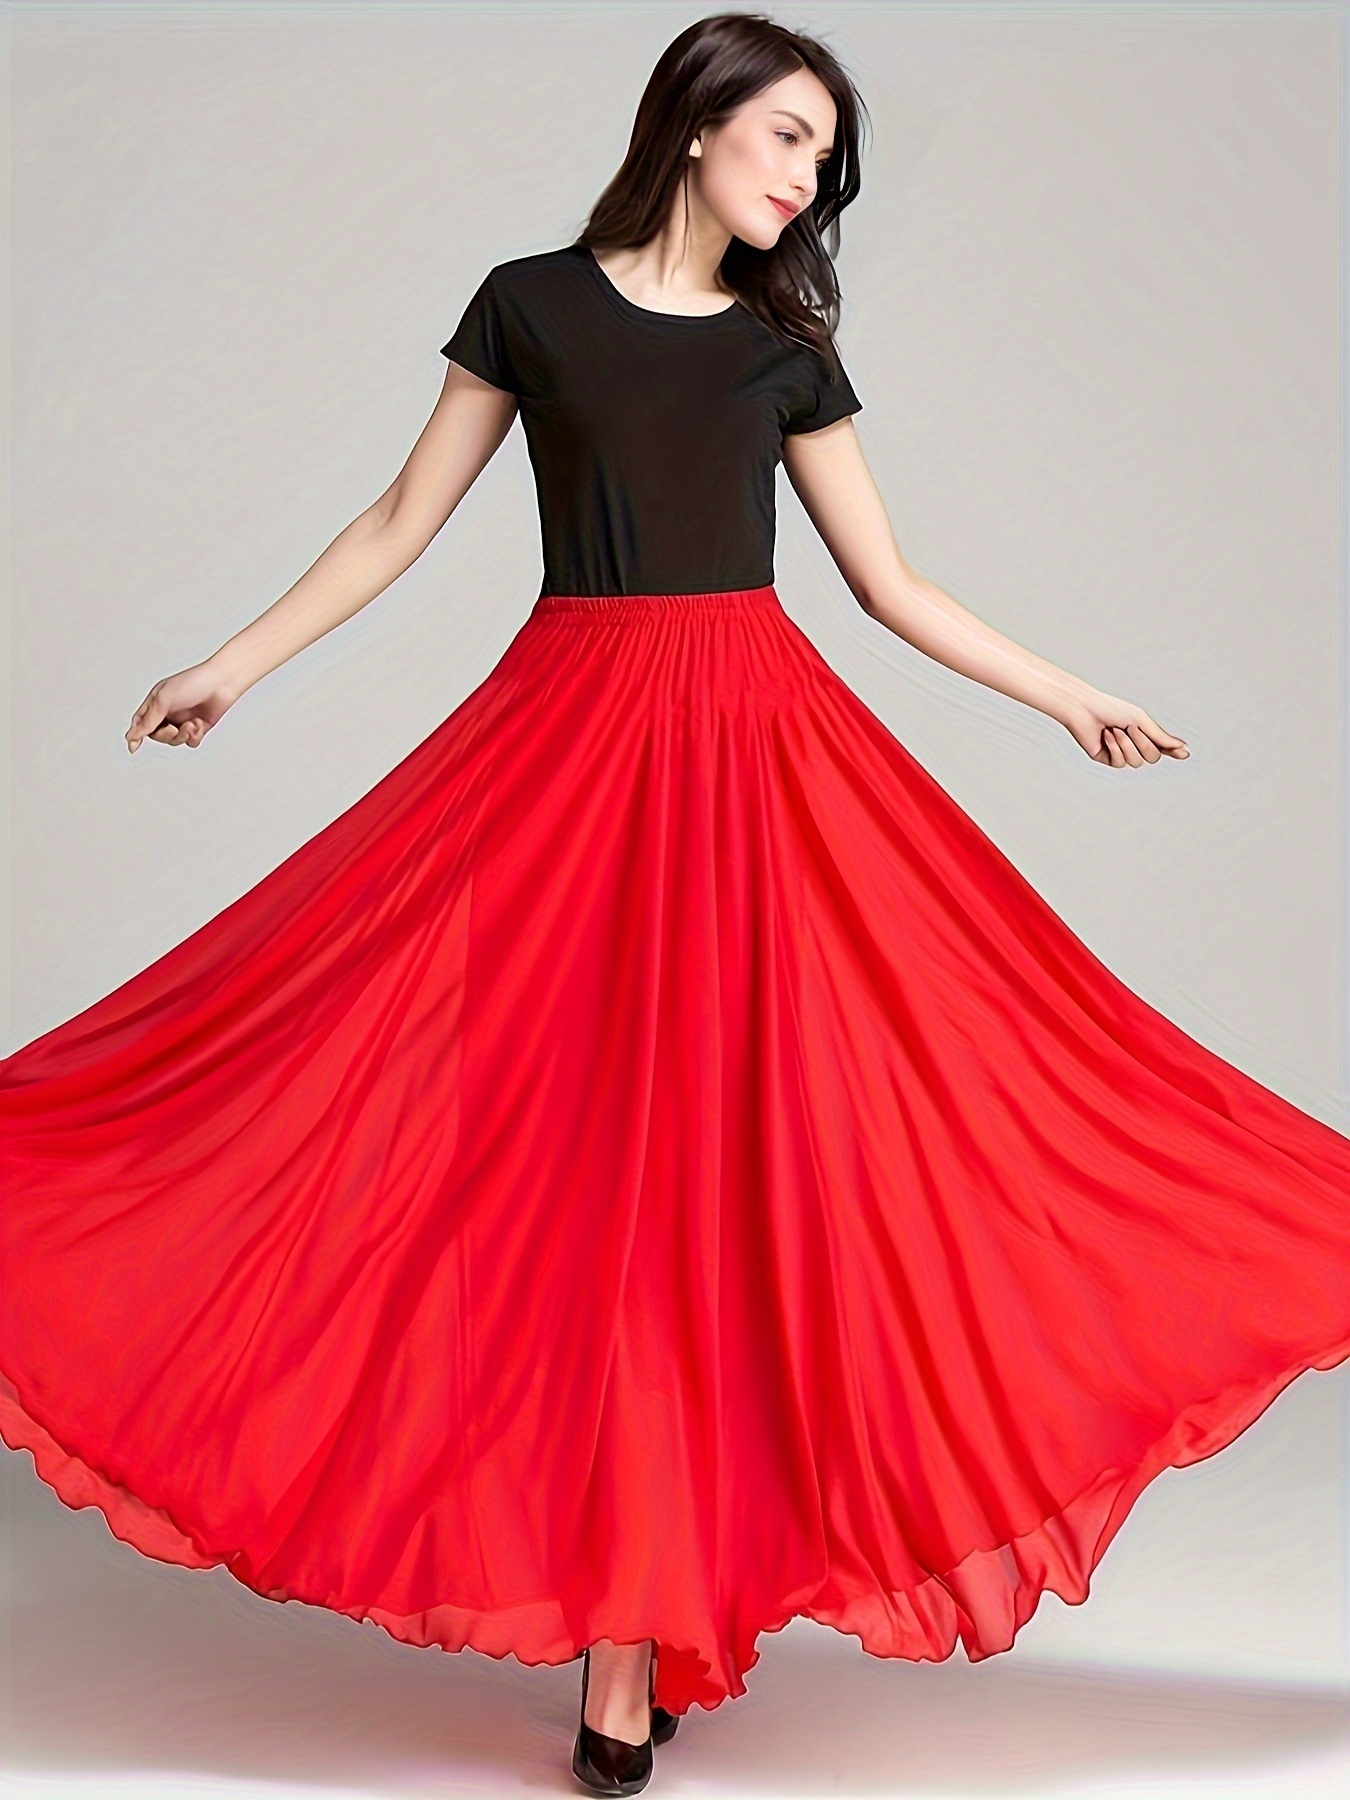 Solid Color Layered Dancing Skirt Elastic High Waist Semi - Temu